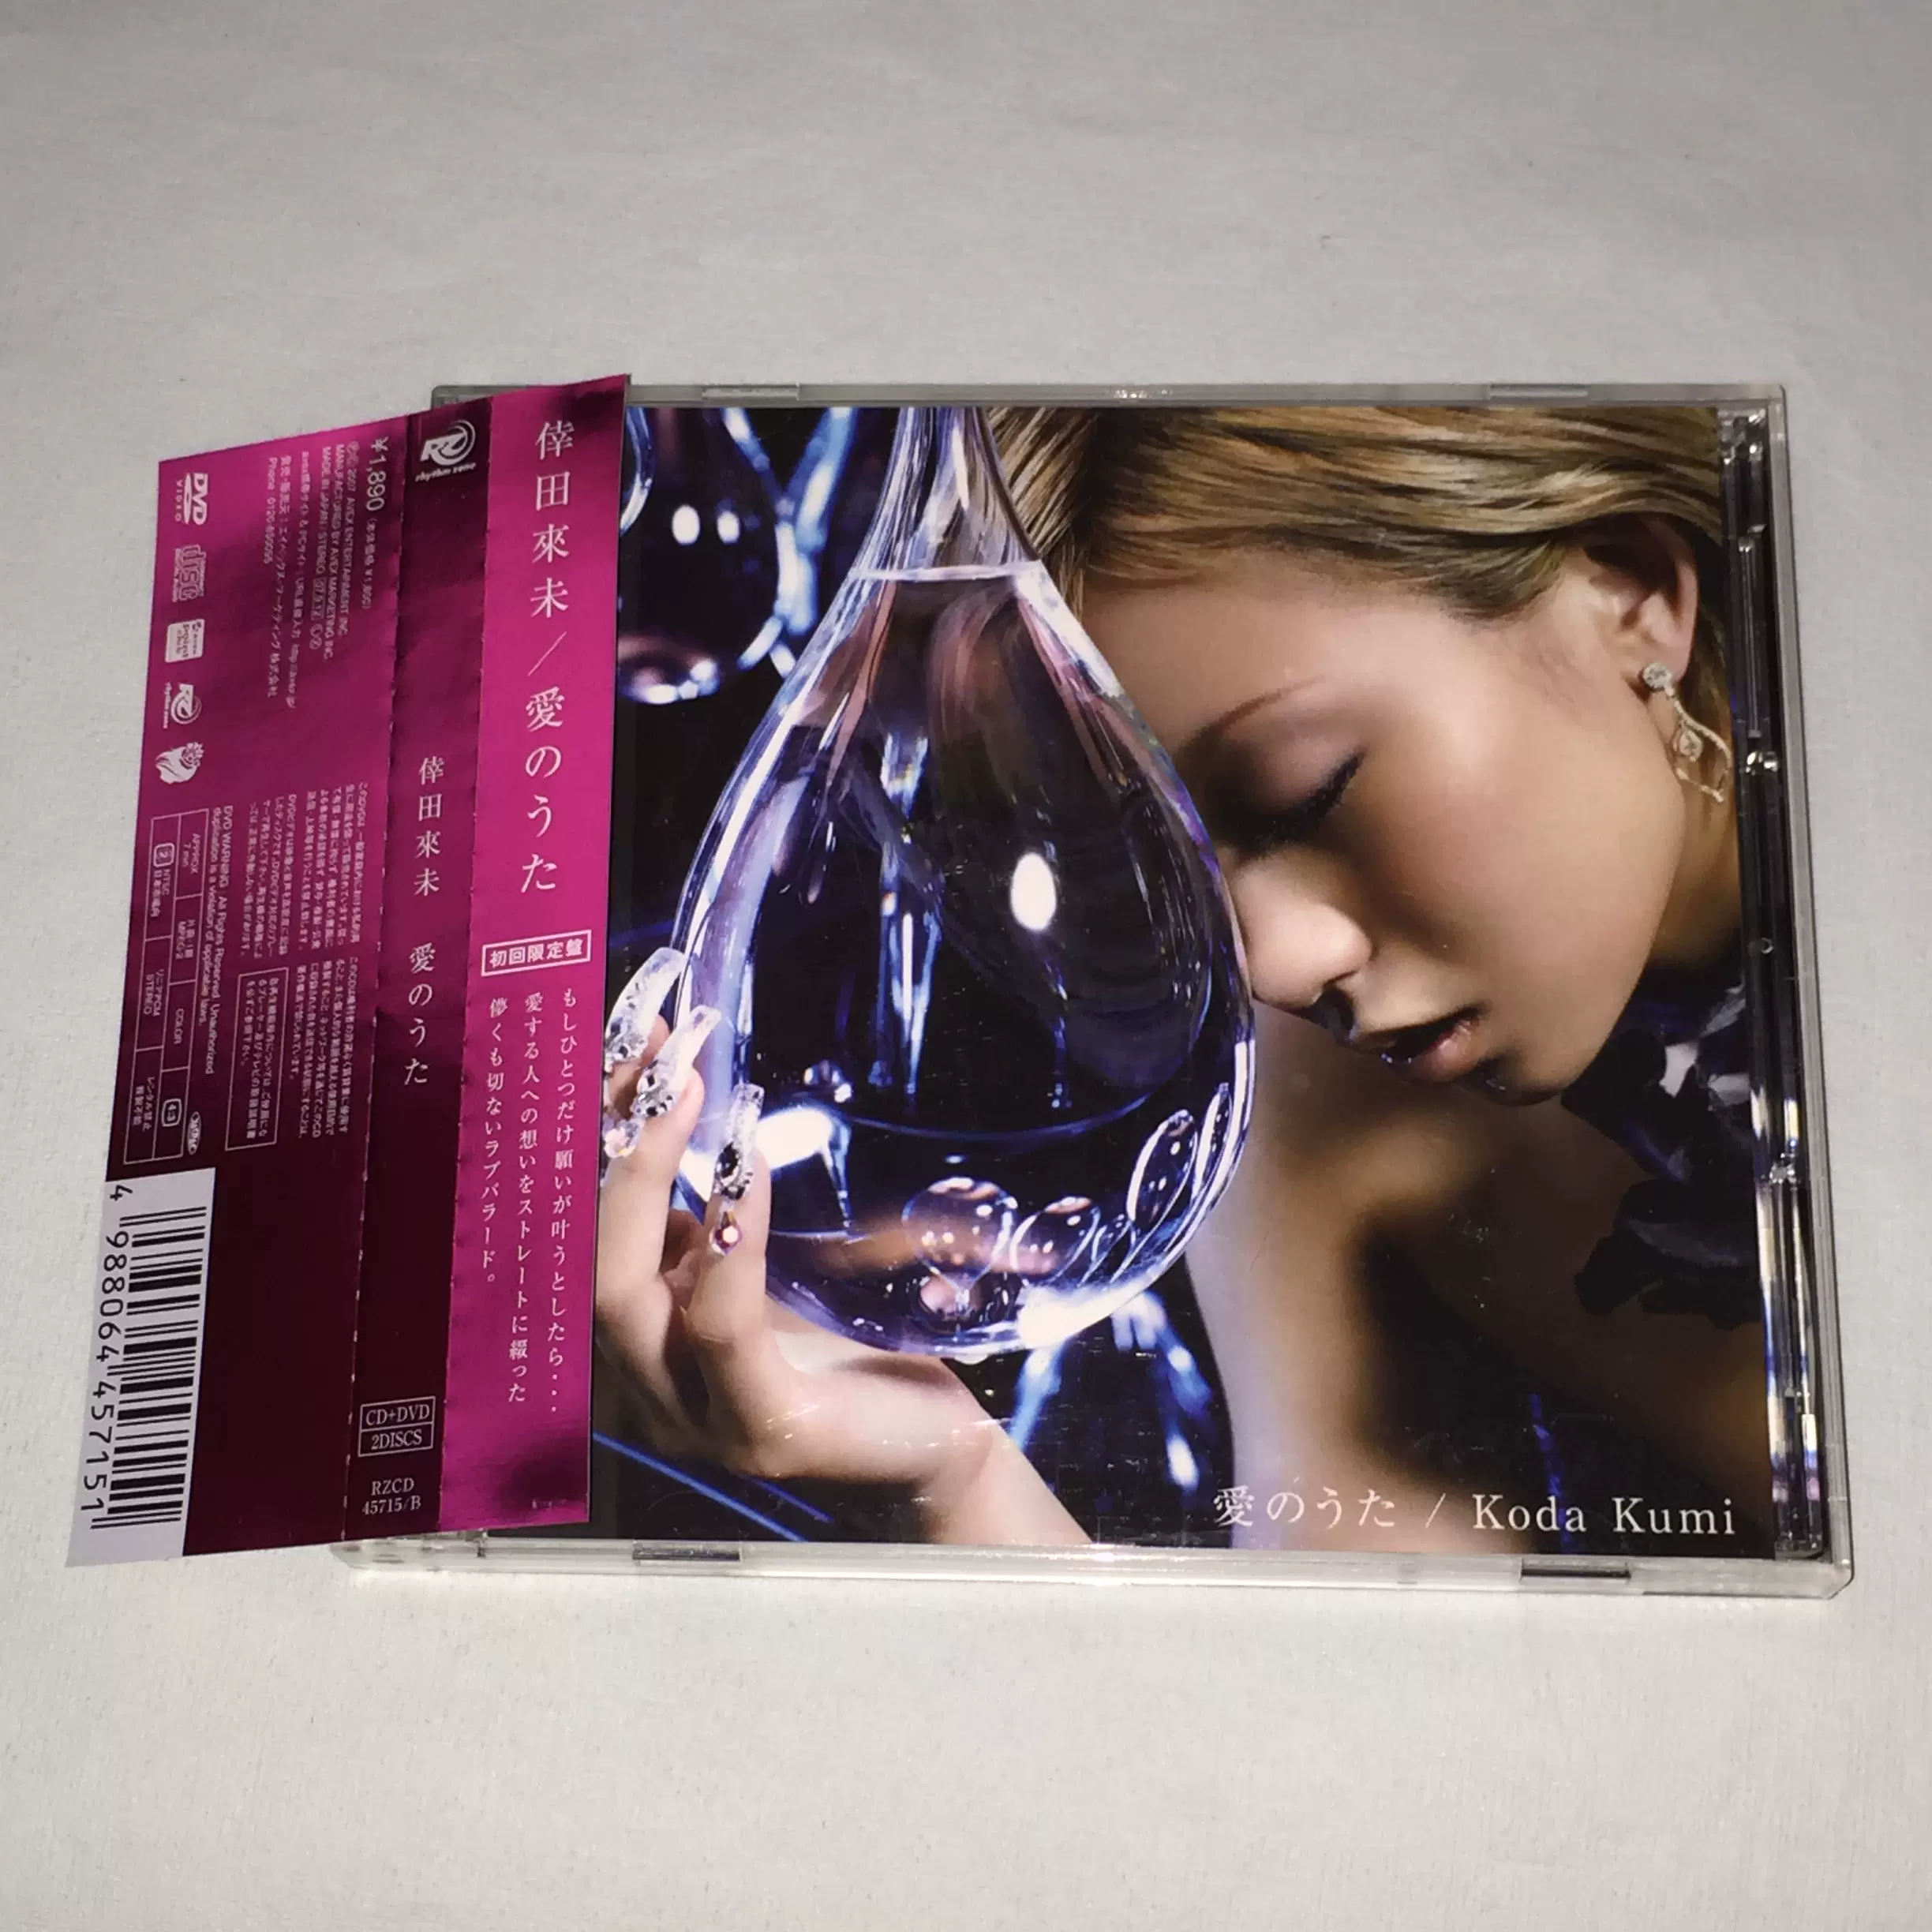 お買い得モデル 倖田來未CD+DVD Kumi 初回限定盤 日本進口初回限定盤) CD